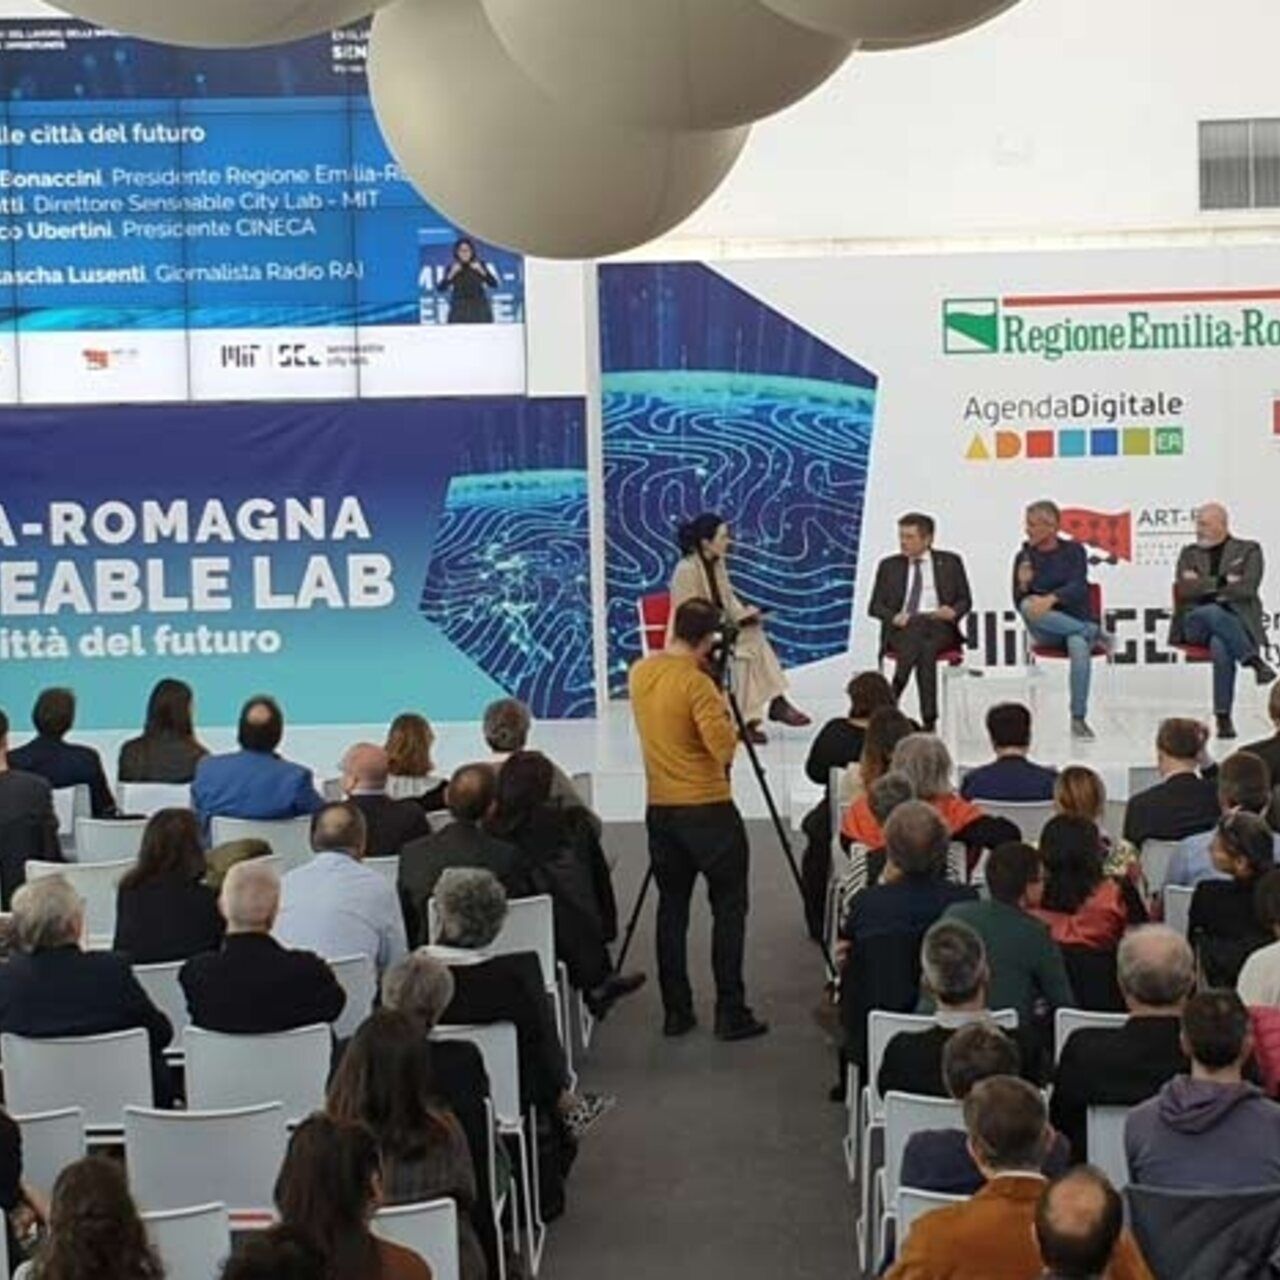 Massachusetts Institute of Technology: MIT Senseable City Lab kommer att anlända till Bologna Tecnopolo för att föreställa sig framtidens städer tack vare samarbetet med regionen Emilia-Romagna